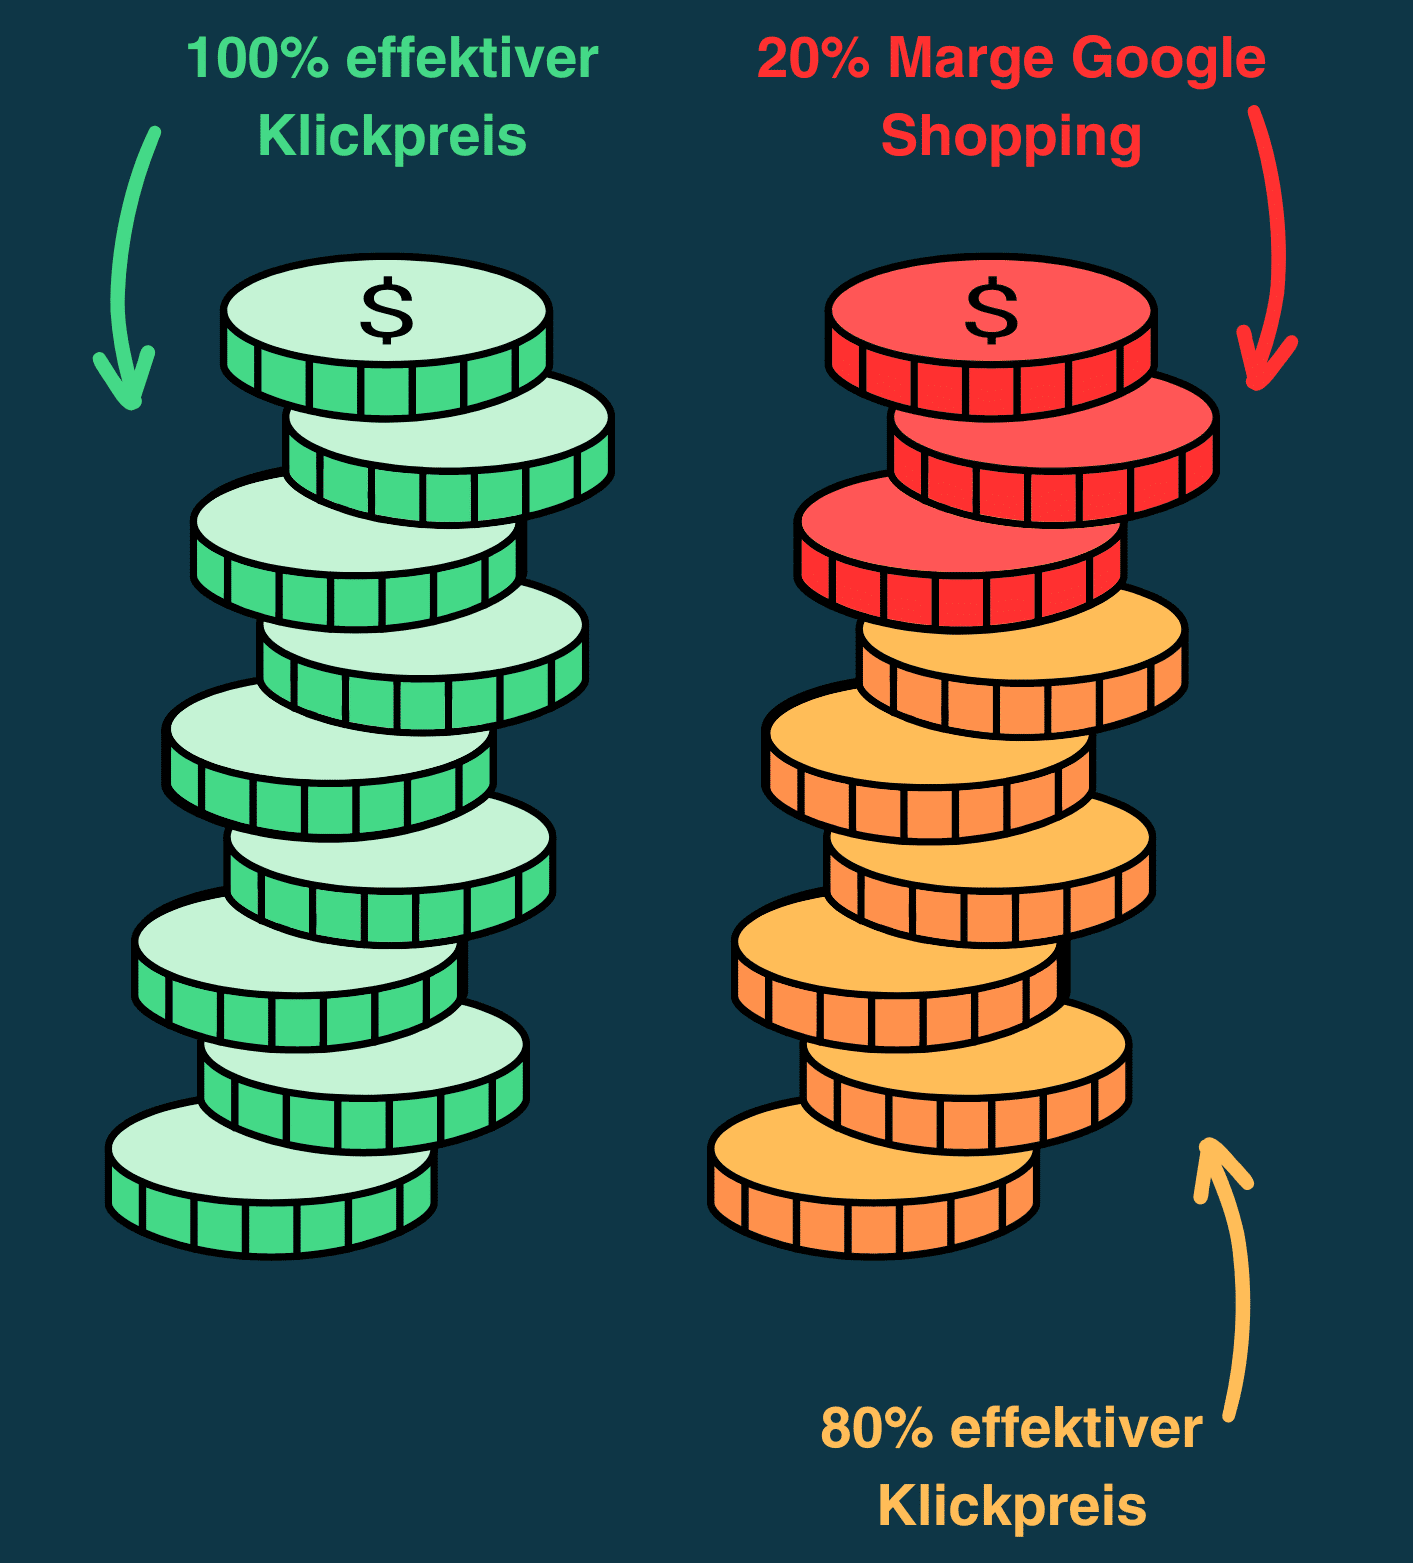 Eine illustrierte Darstellung zeigt den Vergleich zweier Stapel von Münzen: der vollständige Stapel repräsentiert "100% effektiver Klickpreis", während der geteilte Stapel "80% effektiver Klickpreis" und "20% Marge Google Shopping" darstellt.